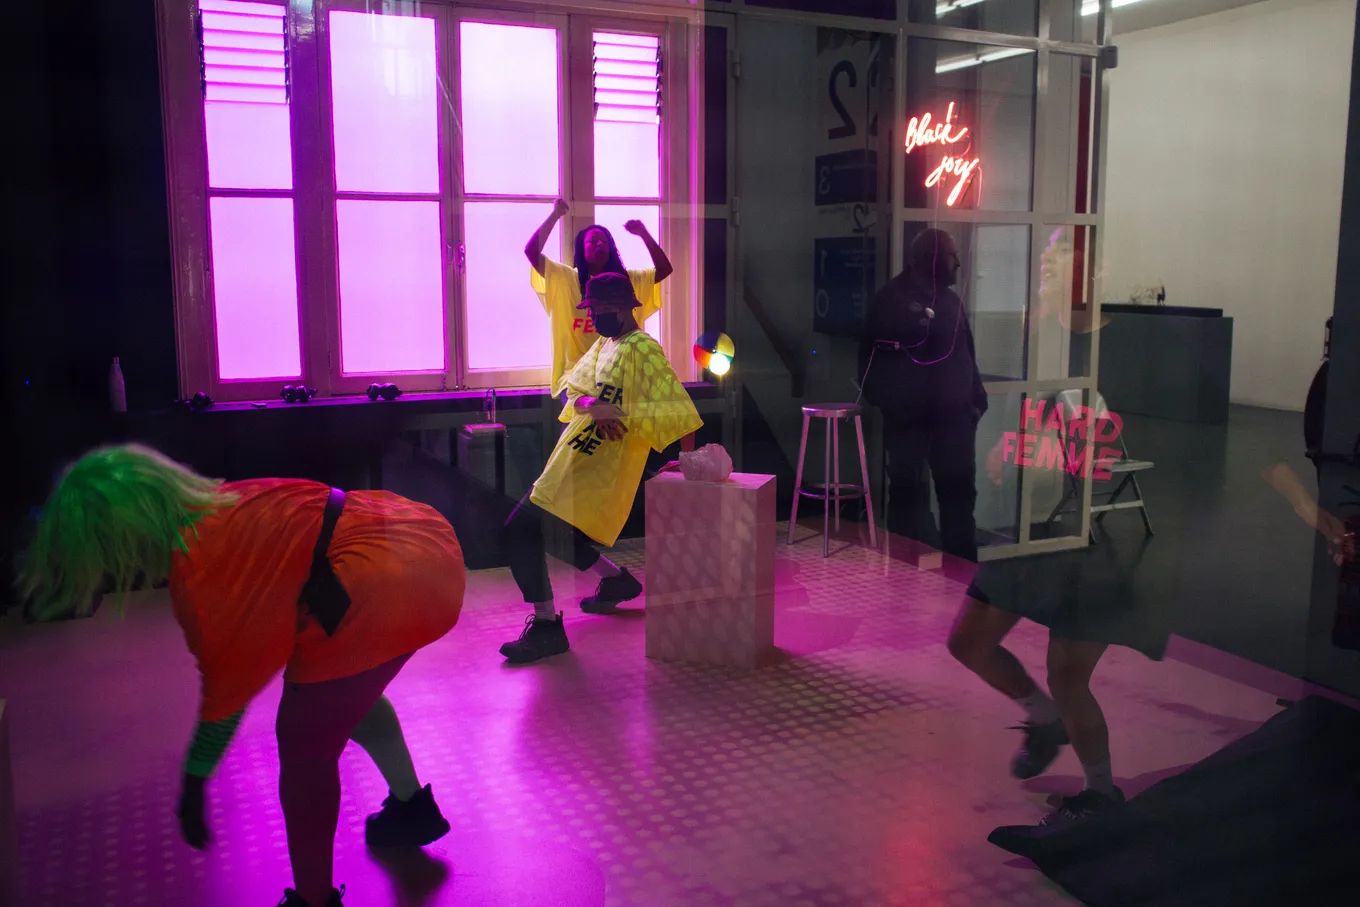 Performers dansen in de tentoonstellingsruimte, met een 'Black Joy' neonlicht op de achterwand. Een performer draagt een tshirt met de tekst 'Hard Femme'.